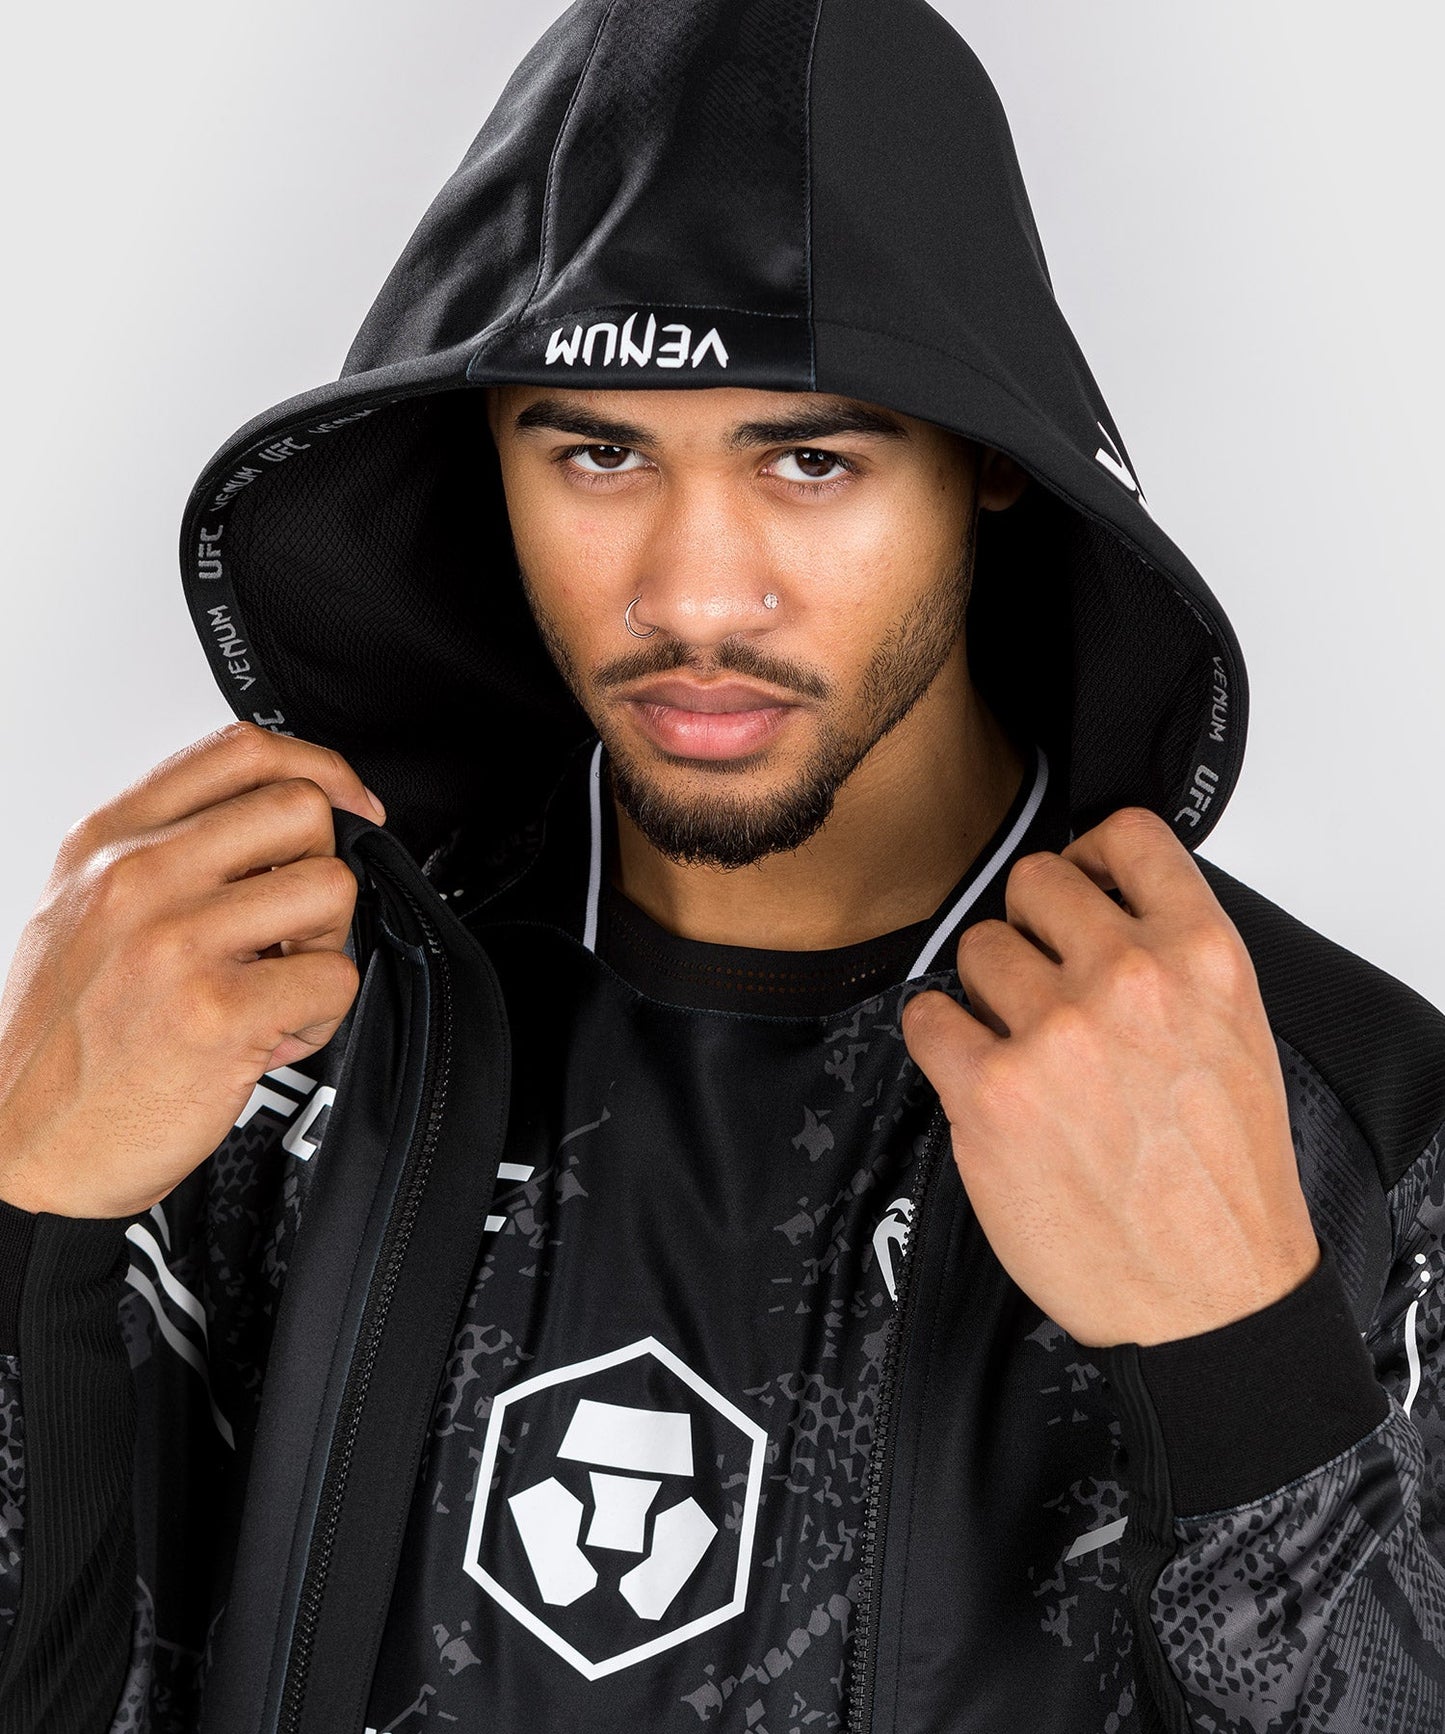 UFC Adrenaline by Venum Authentic Fight Night  Gepersonaliseerde jas voor Mannen - Zwart